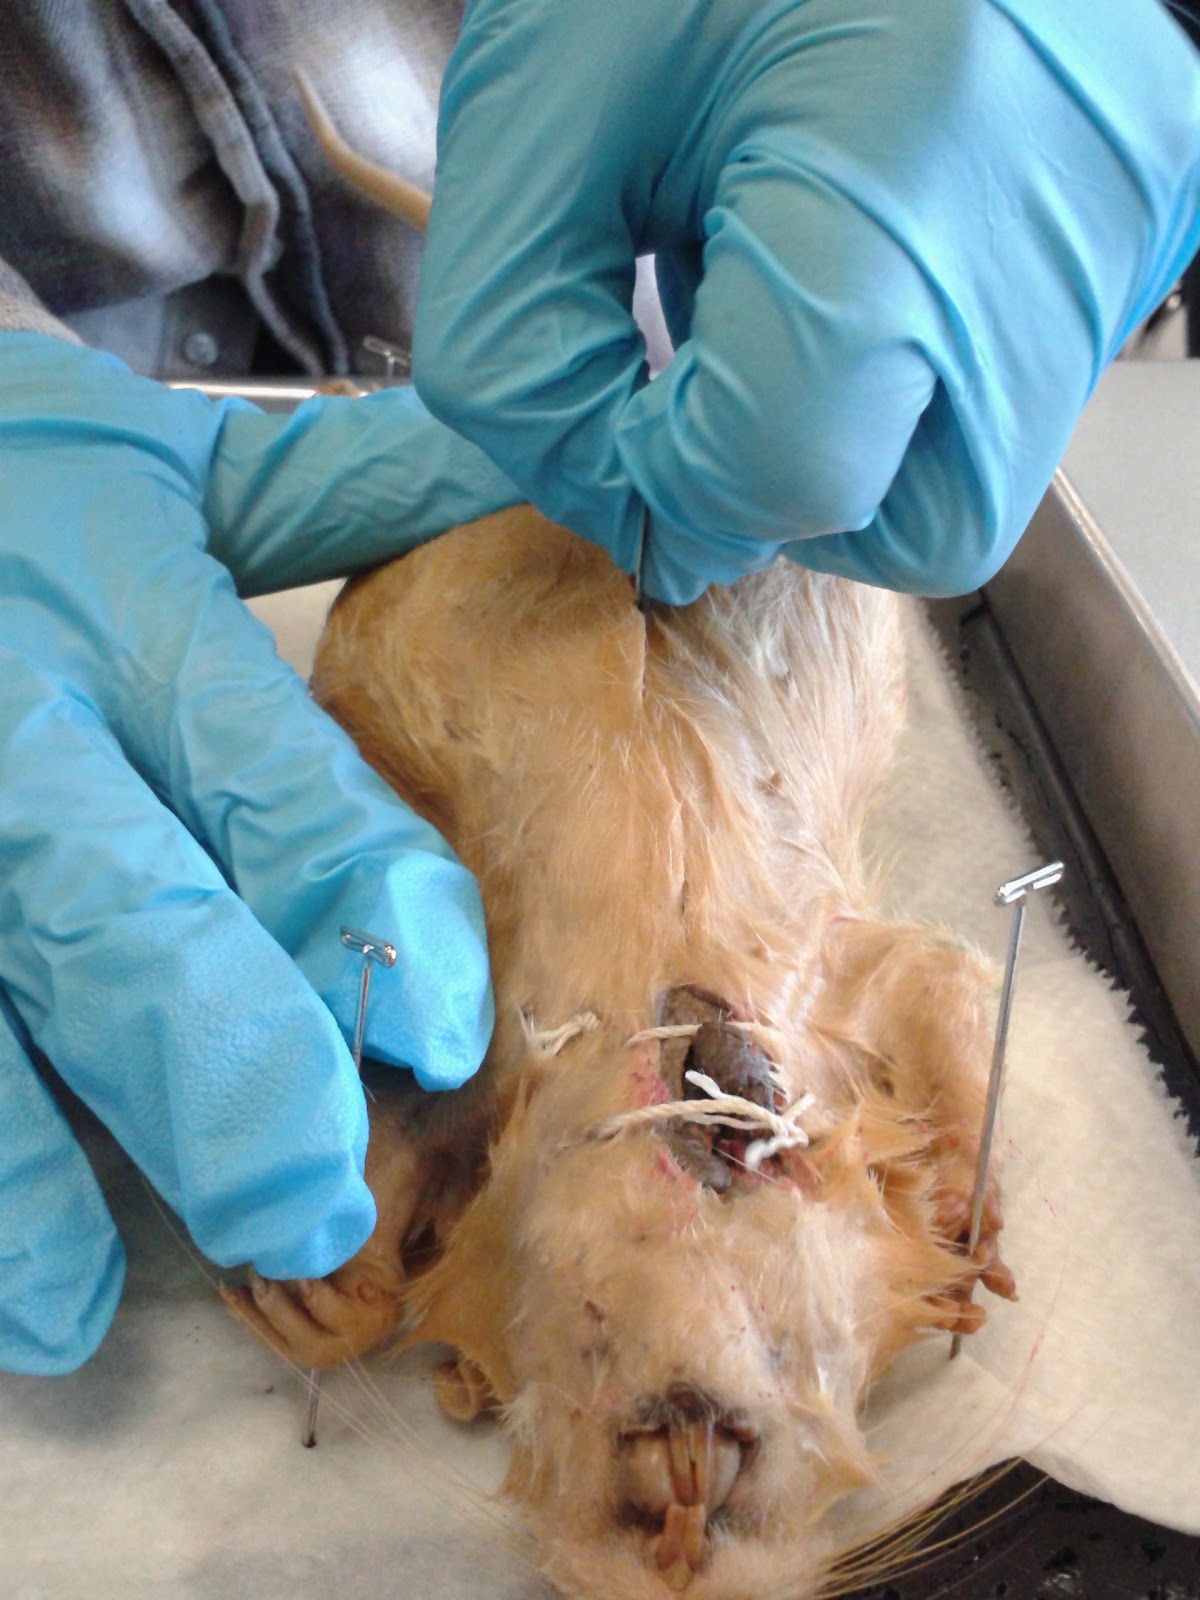 Alan Zhong Fungus Fun: Rat Dissection Zhong